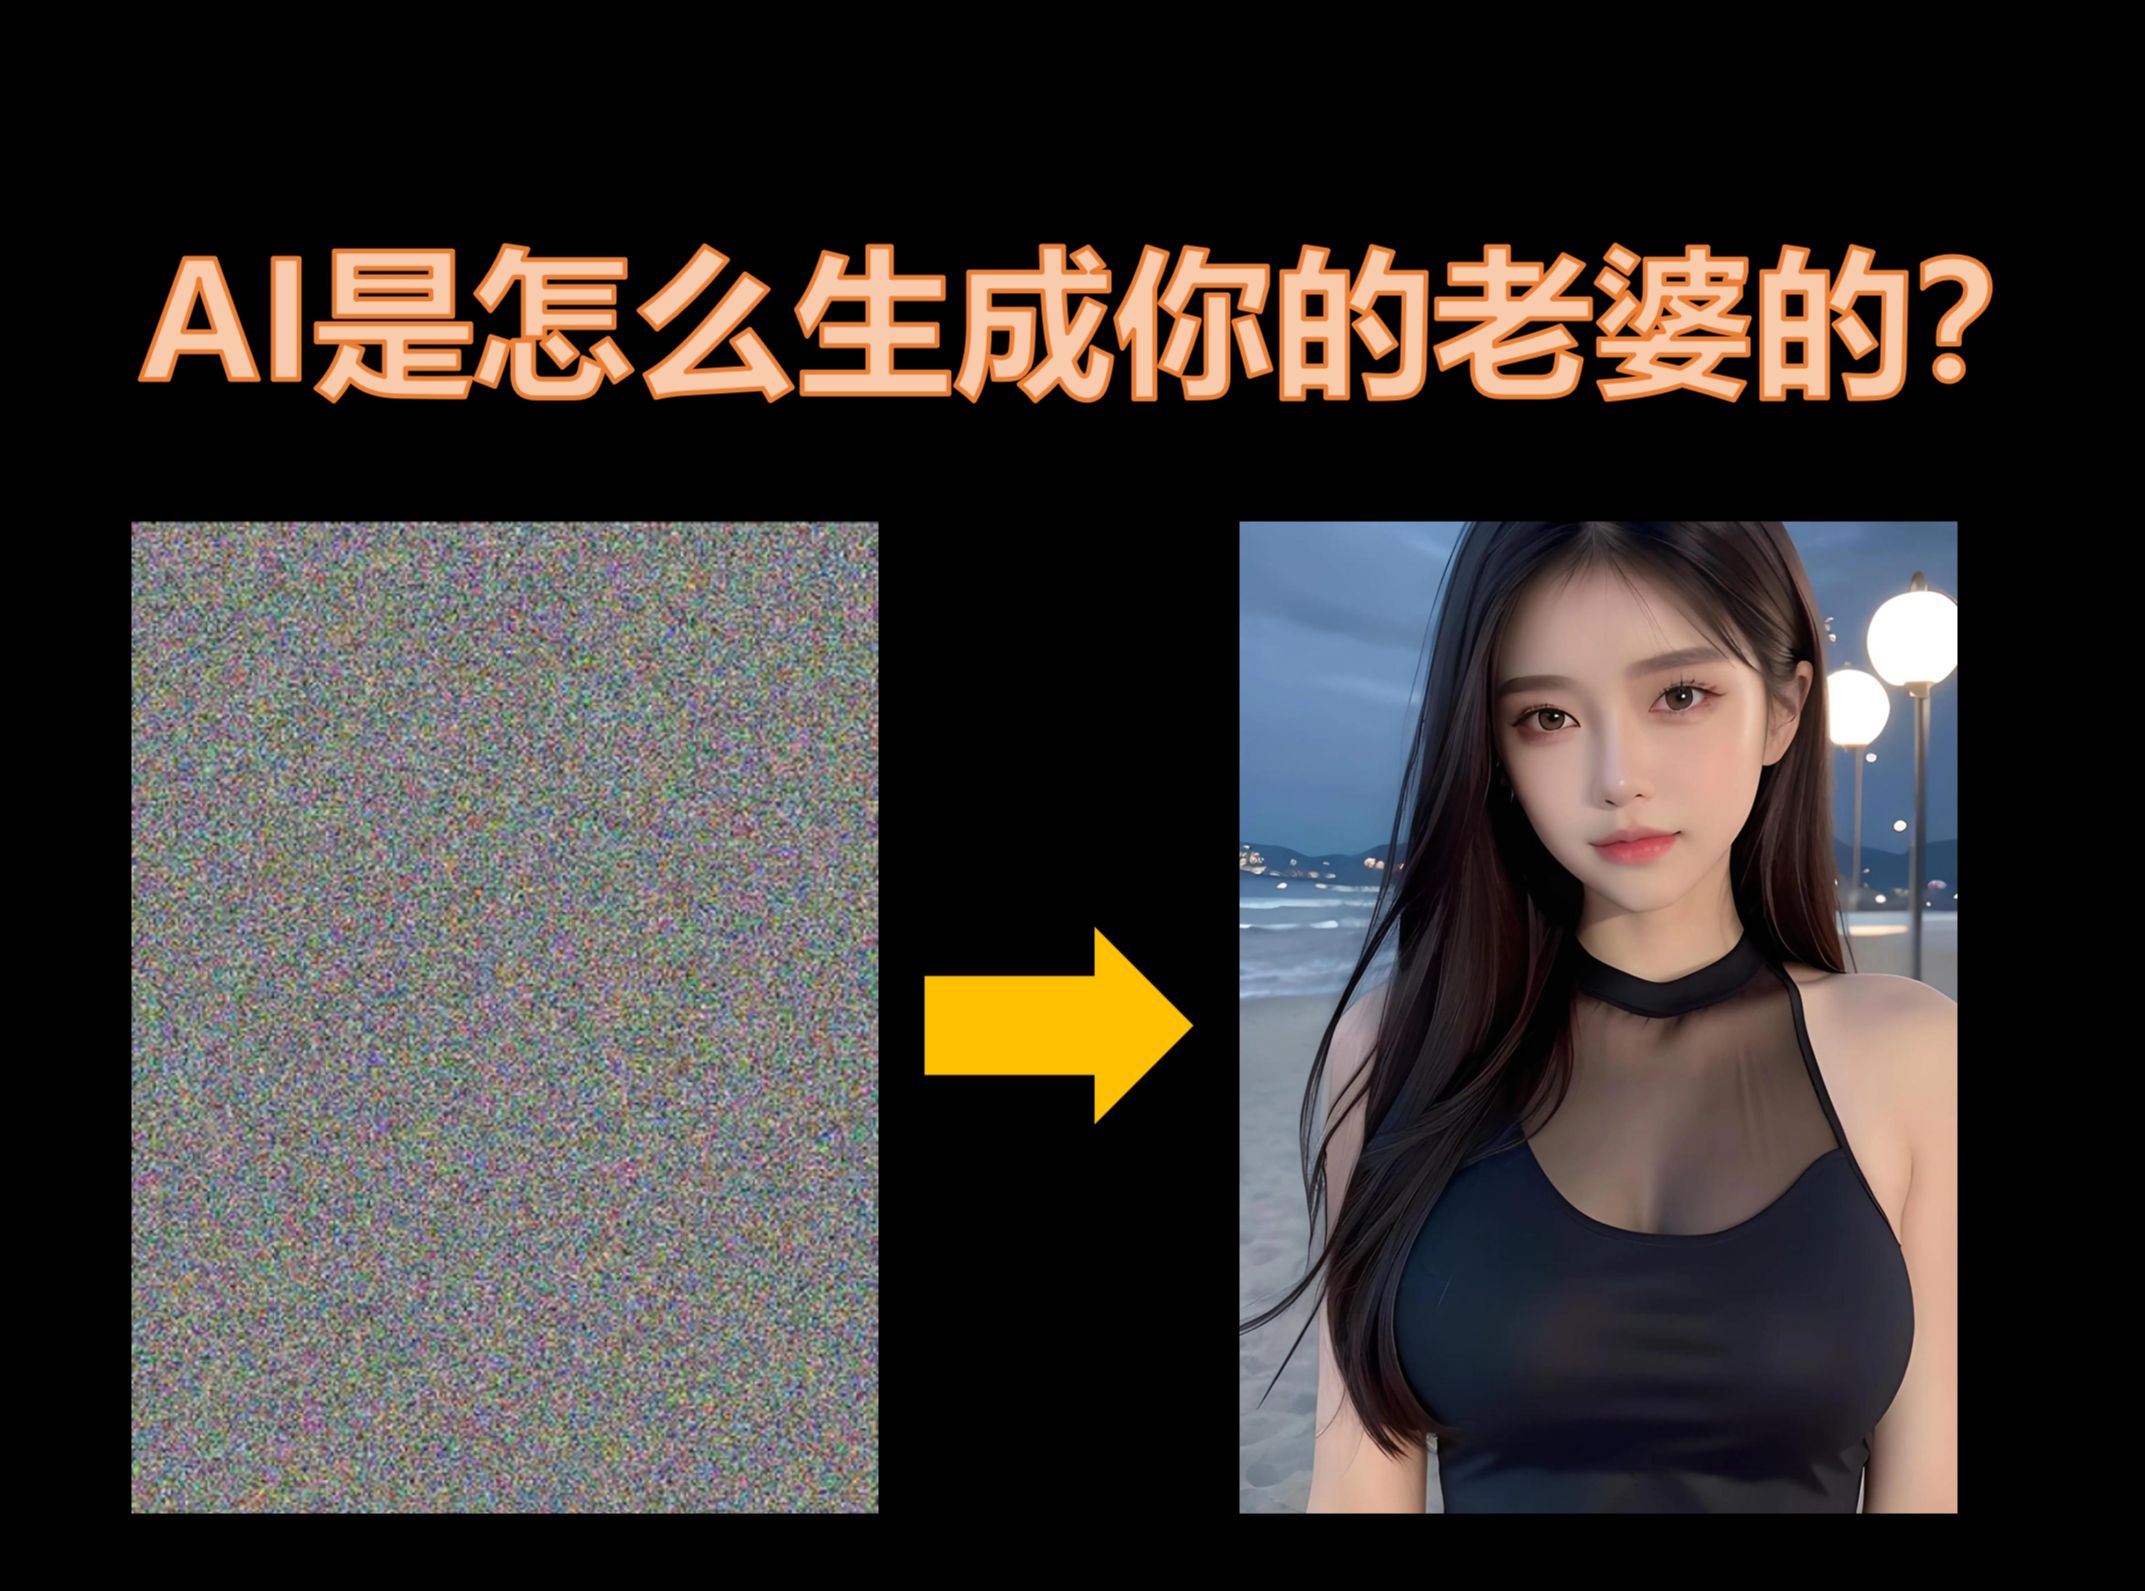 【硬核科普】清华AI博士教你AI是怎么生成图片和视频的